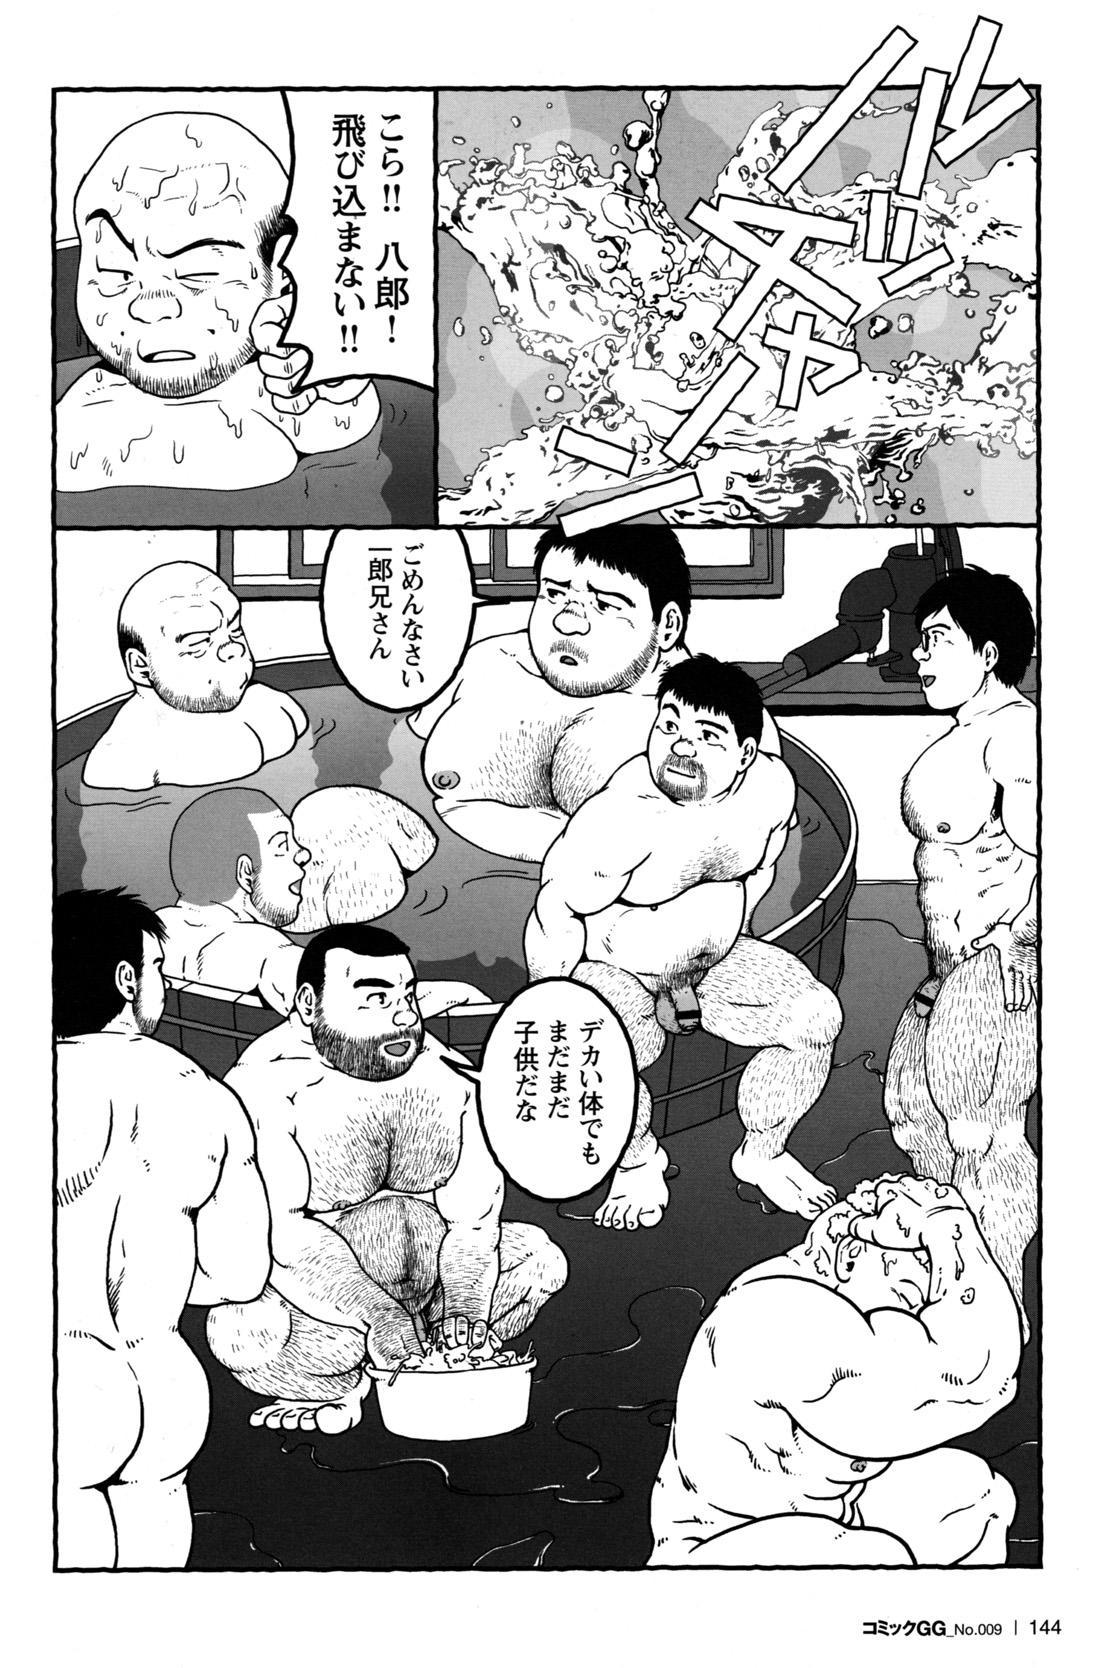 Comic G-men Gaho No.09 Gacchibi Zeme 132